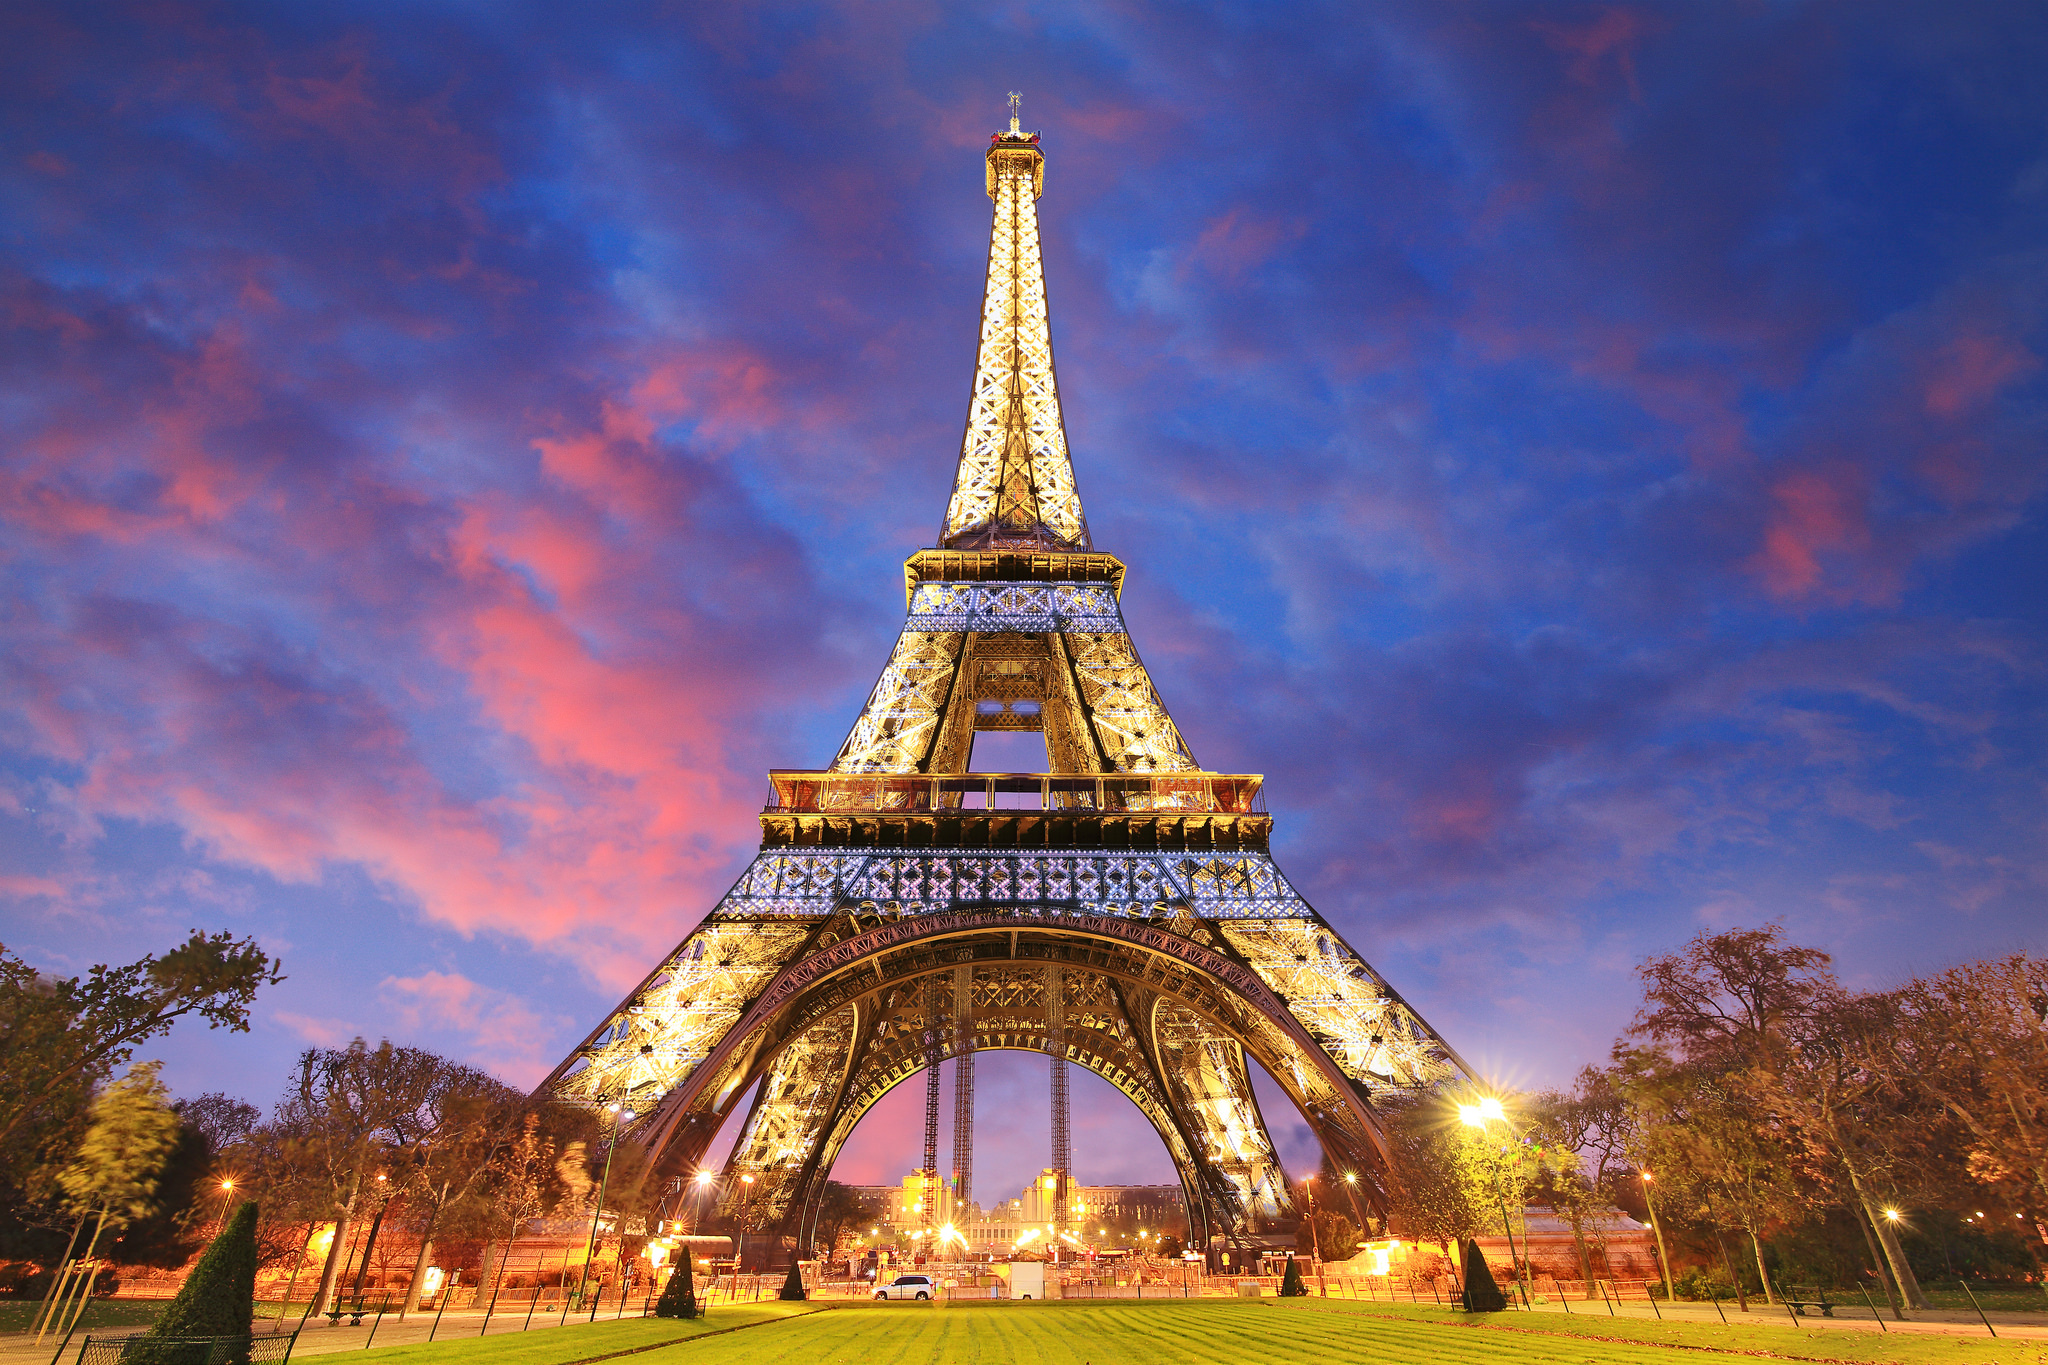 Tổng Hợp 50+ Hình Ảnh Tháp Eiffel Đẹp, Lộng Lấy, Hùng Vĩ Nhất 78